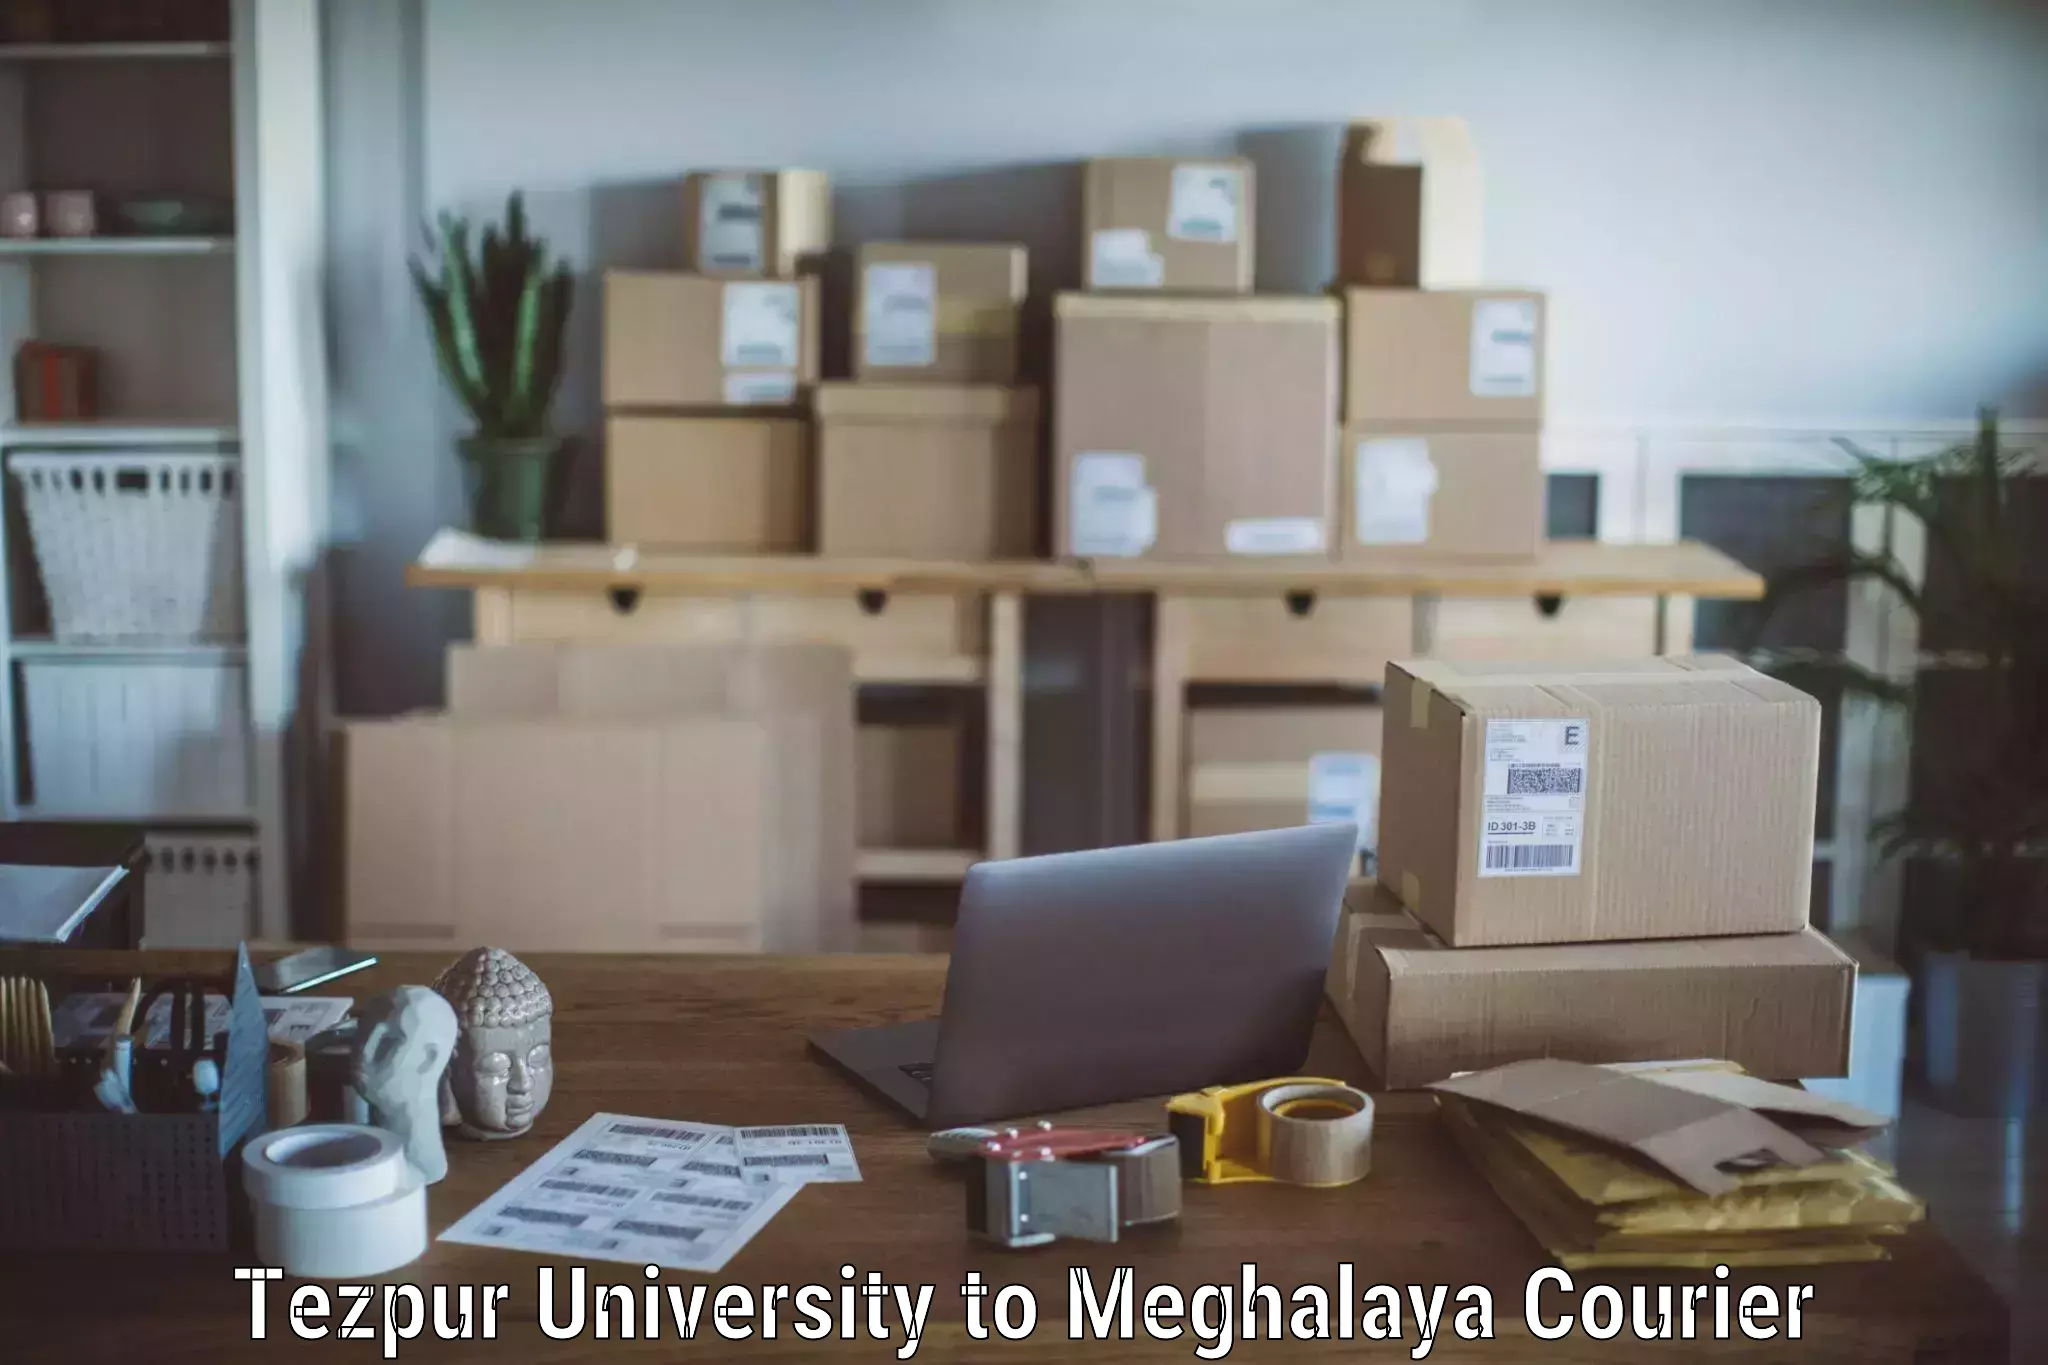 Door-to-door relocation services Tezpur University to Meghalaya